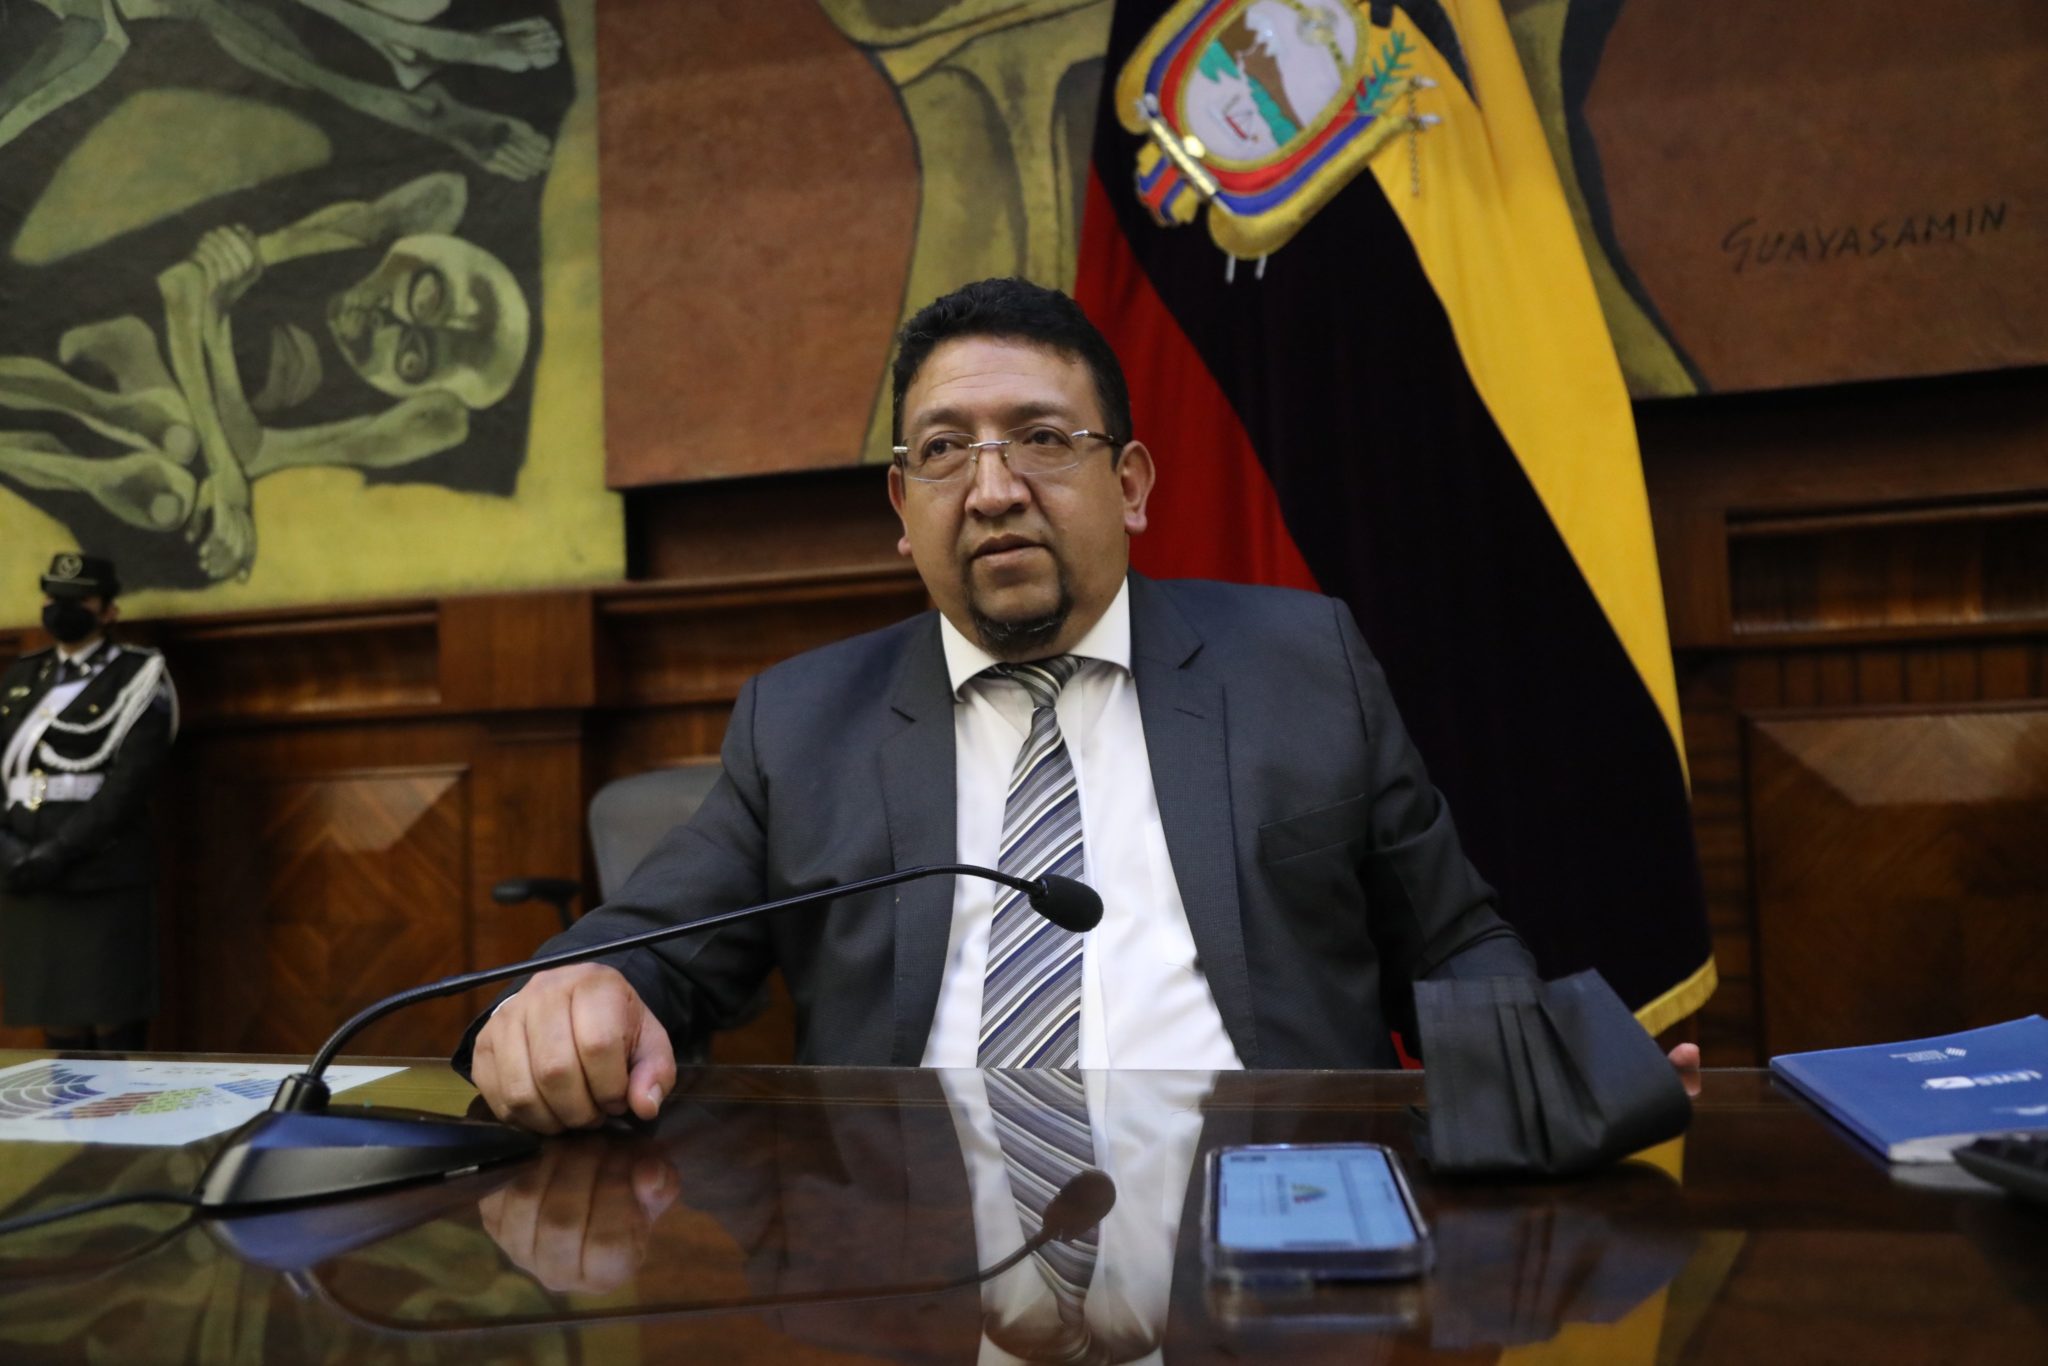 AUTORIDAD. El Presidente de la Asamblea, Virgilio Saquicela, enfrentará una investigación en la Fiscalía.